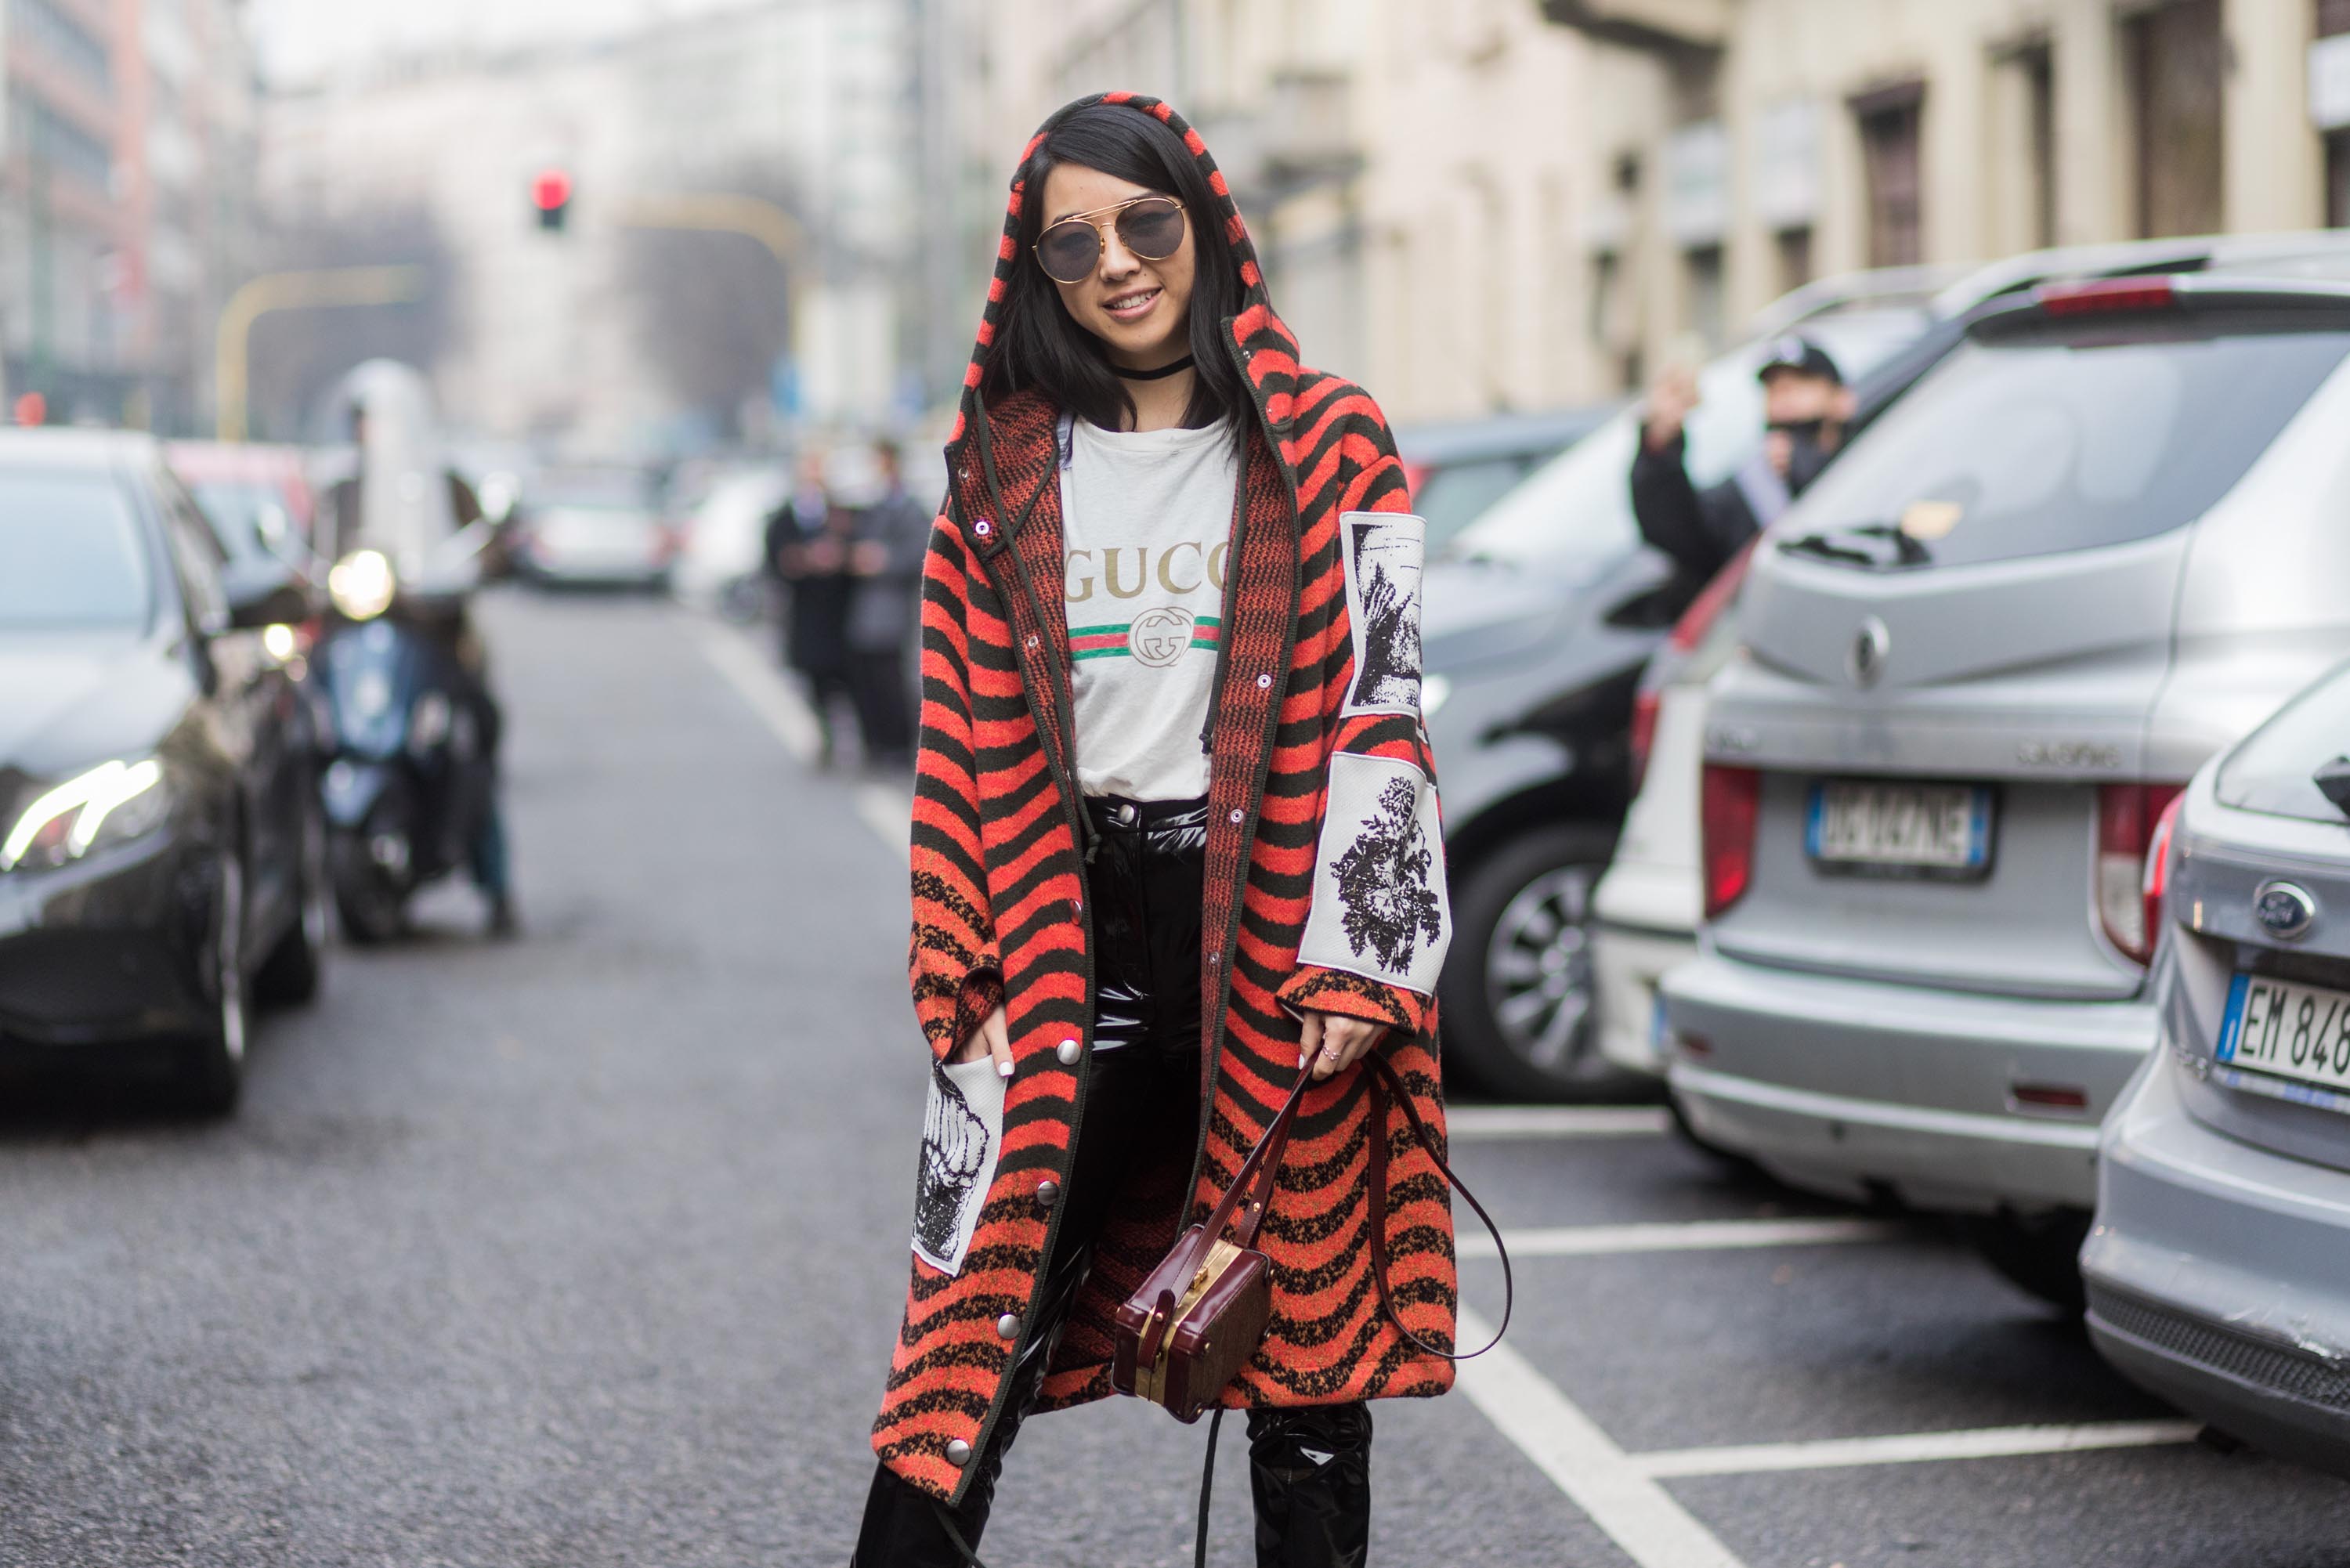 Street style during Milan Fashion Week Fall/Winter 2017/18